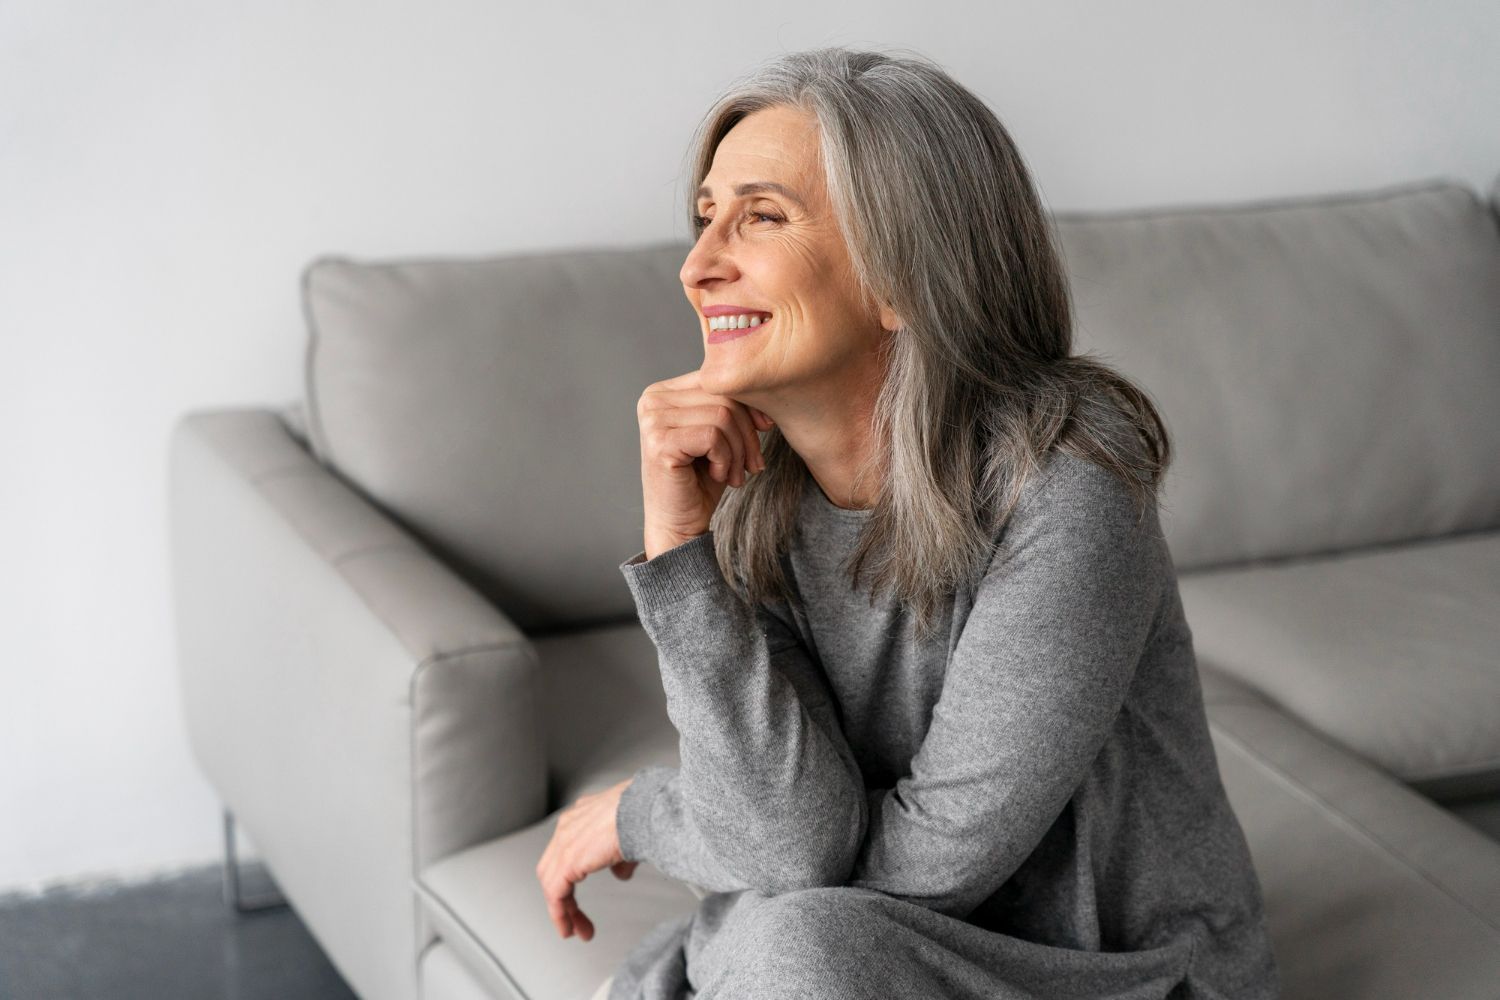 Quando a menopausa chega para as mulheres? Descubra idades e sintomas para ficar alerta